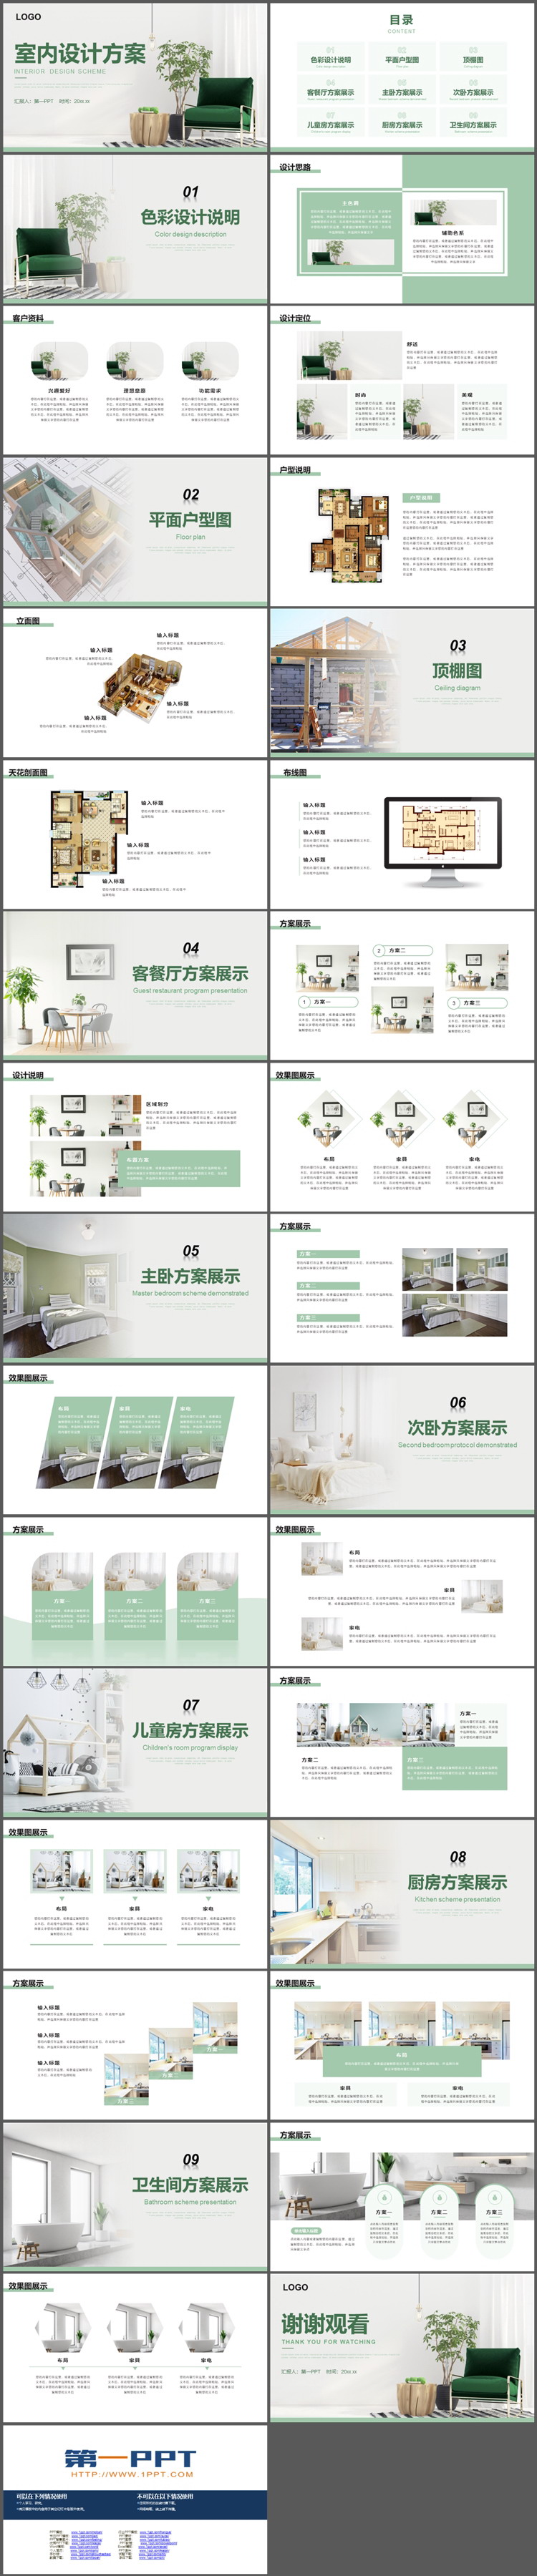 绿色清新室内设计方案PPT模板下载